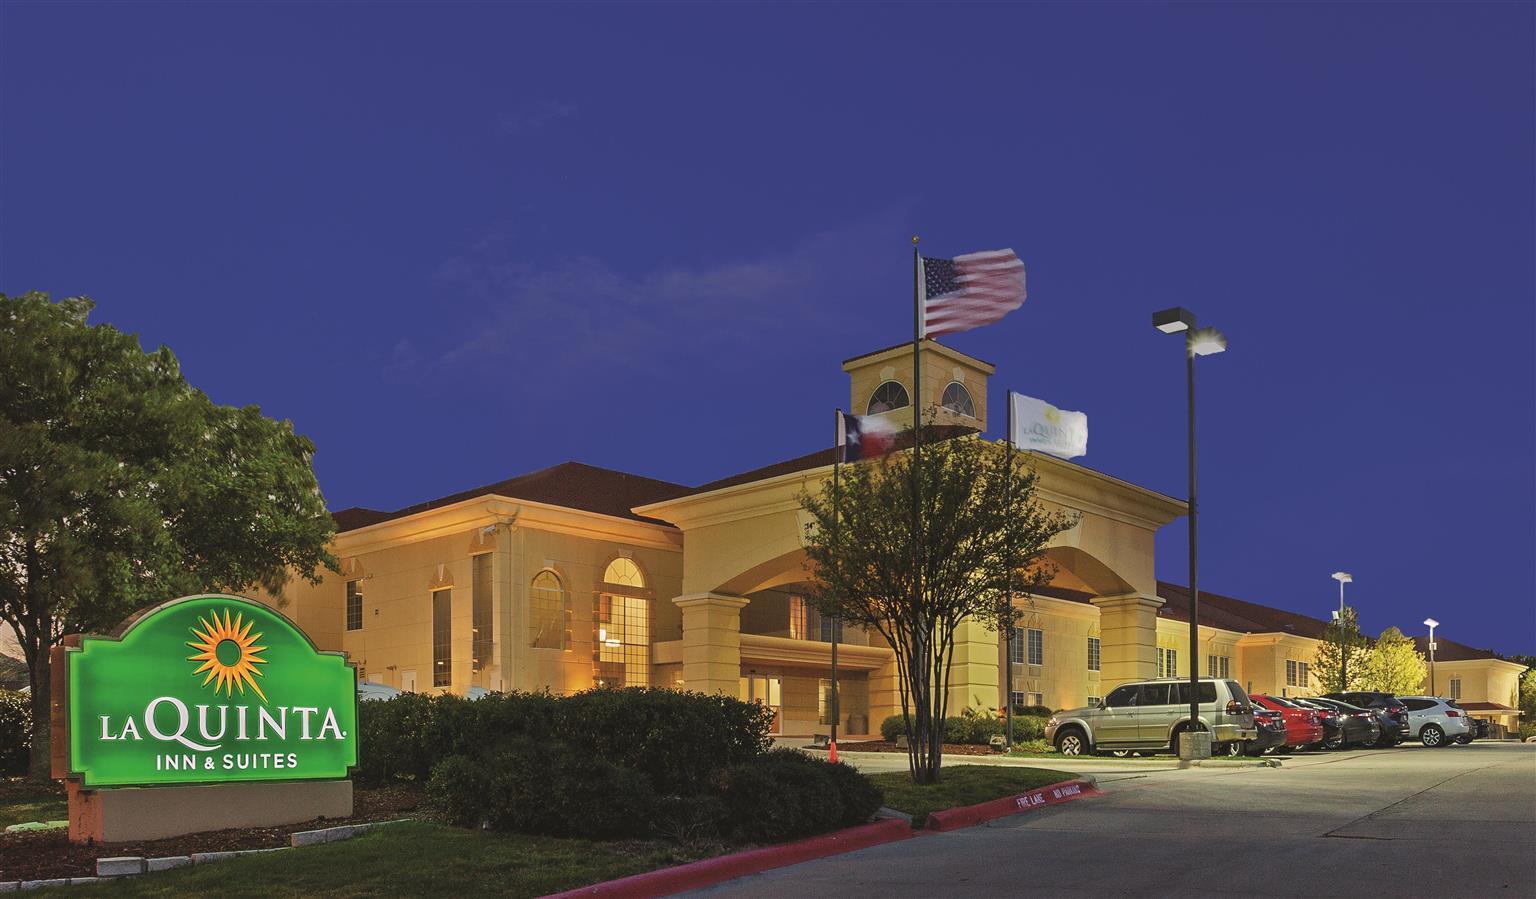 Photo of La Quinta Inn & Suites Dallas - Las Colinas, Irving, TX